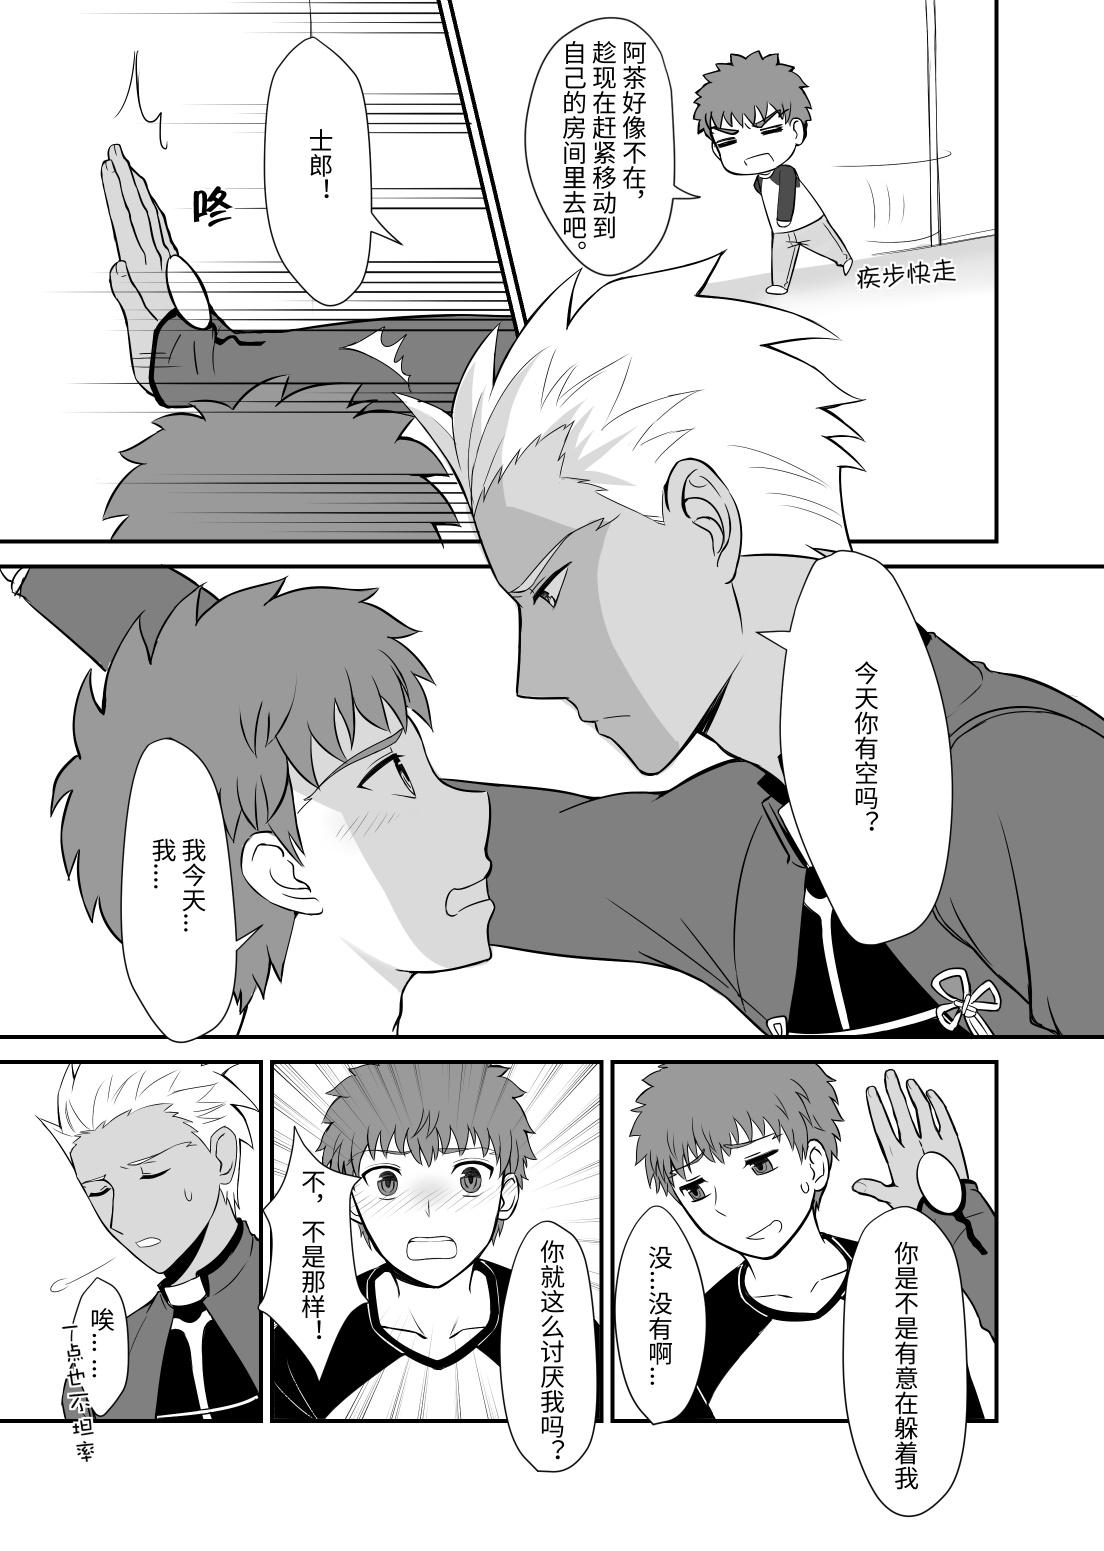 Strange Archer x Emiya Shirou - Fate stay night Fit - Page 3